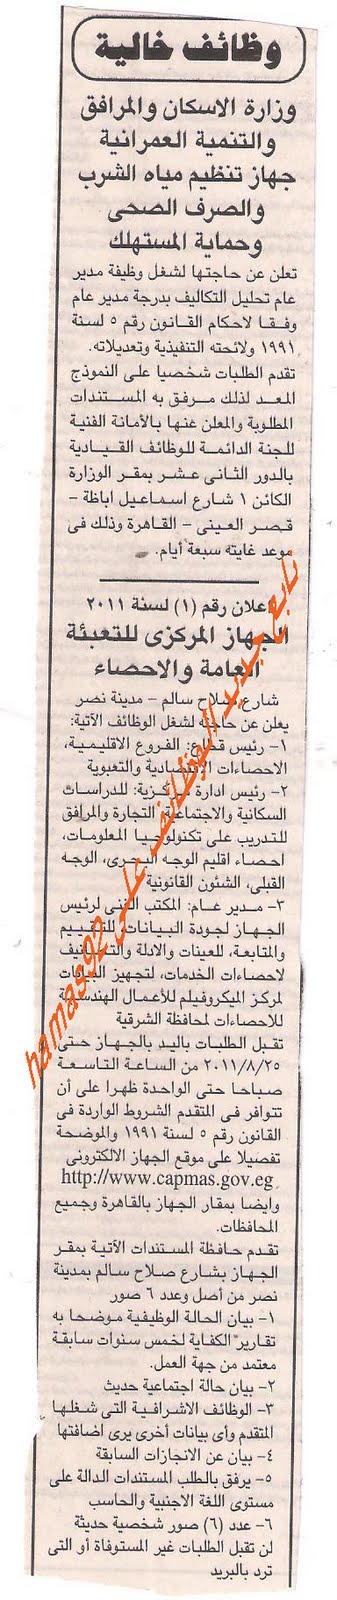 وظائف جريدة الجمهورية الثلاثاء 16 اغسطس 2011 Picture